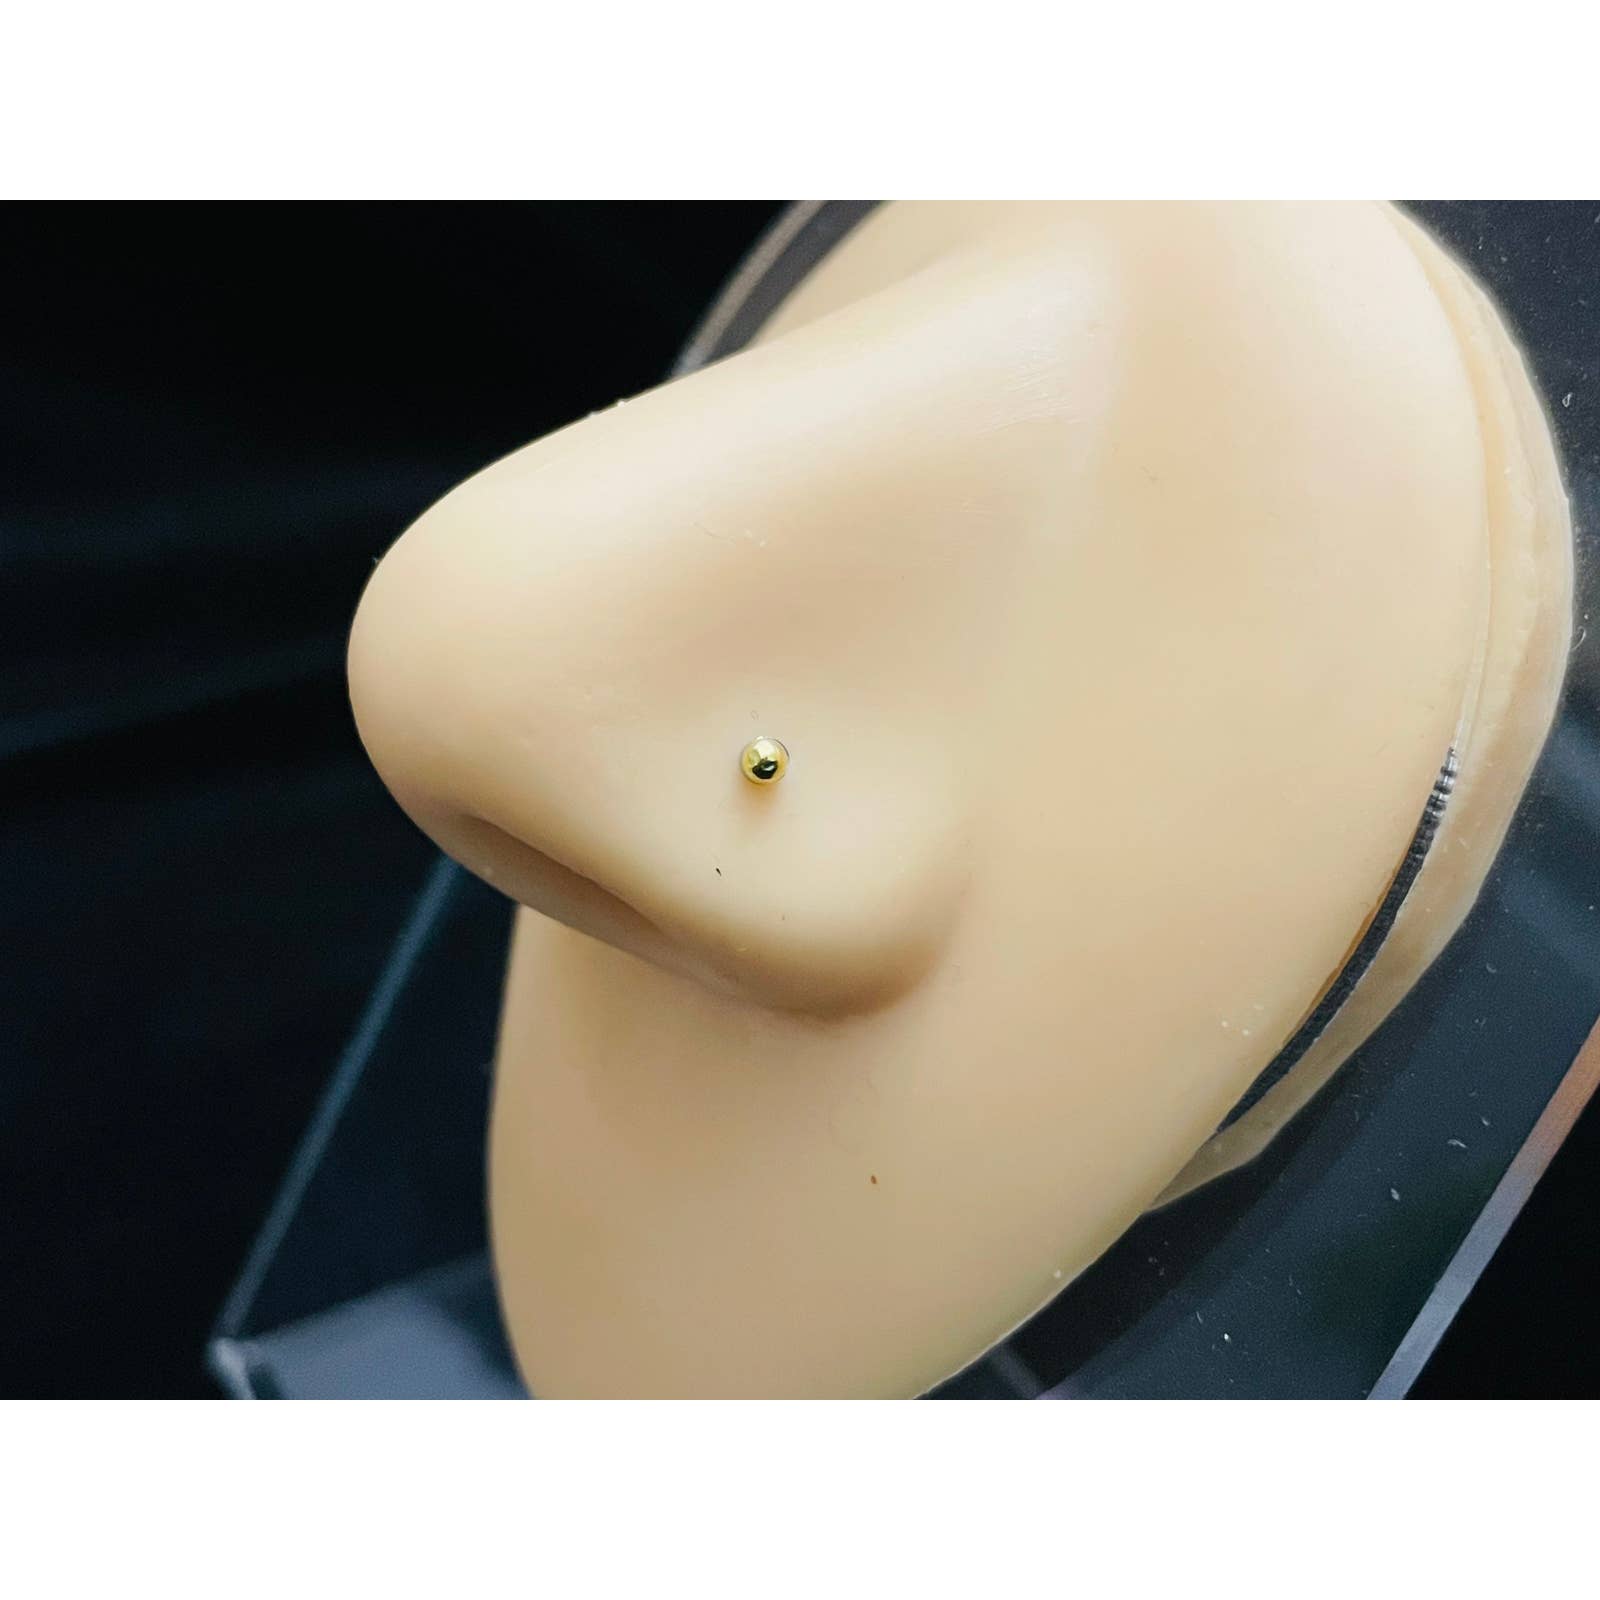 Magnetic Nose Stud - Fake Piercing